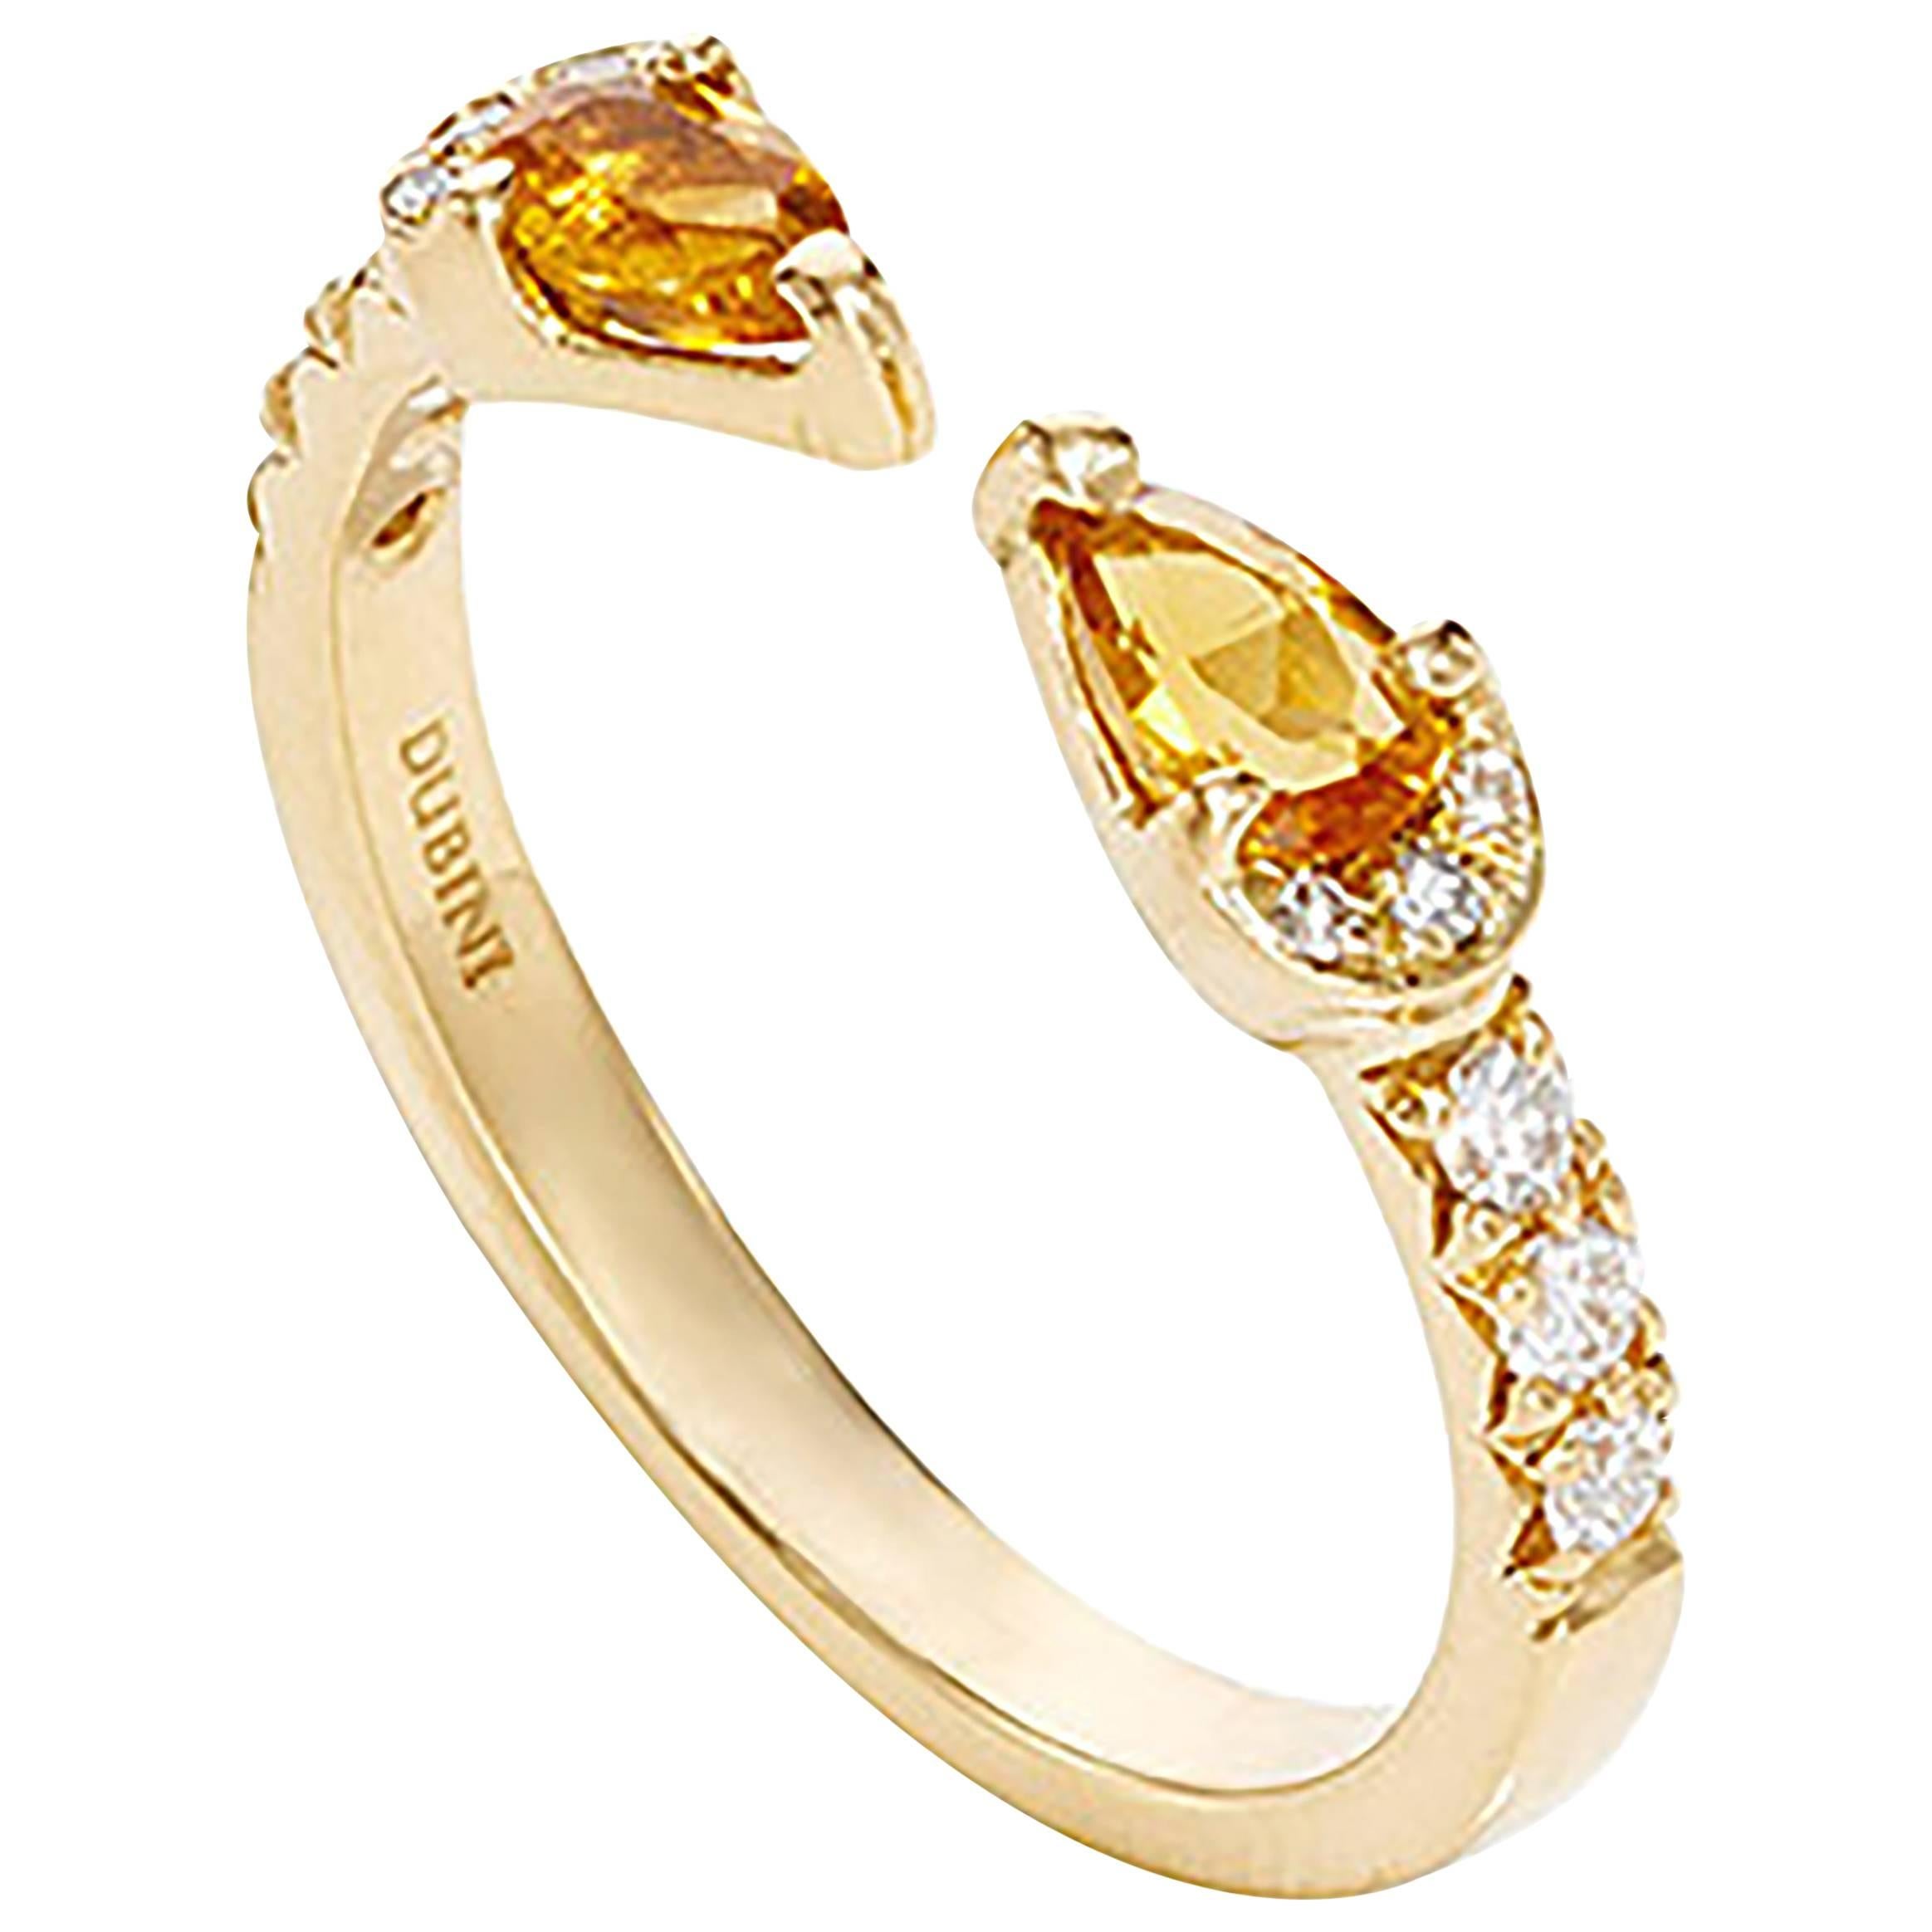 Dubini Theodora Citrine Drops And White Diamonds 18K Yellow Gold Ring